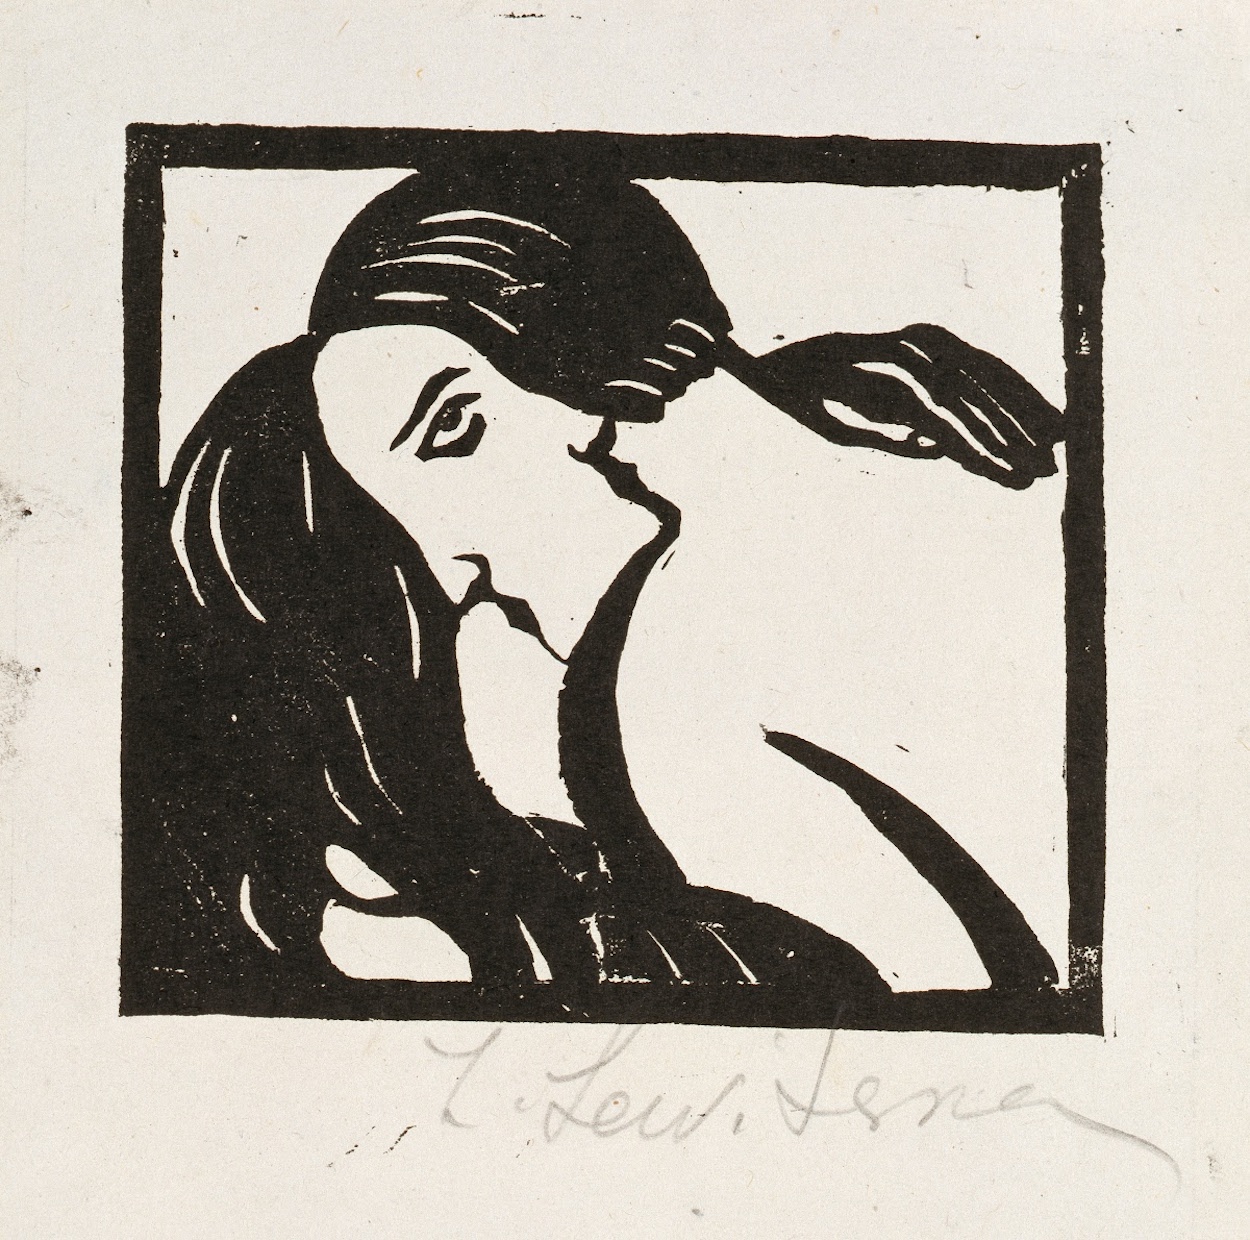 Le baiser by Sofia Levytska - Années 1920 - 5.3 x 13.5 cm 